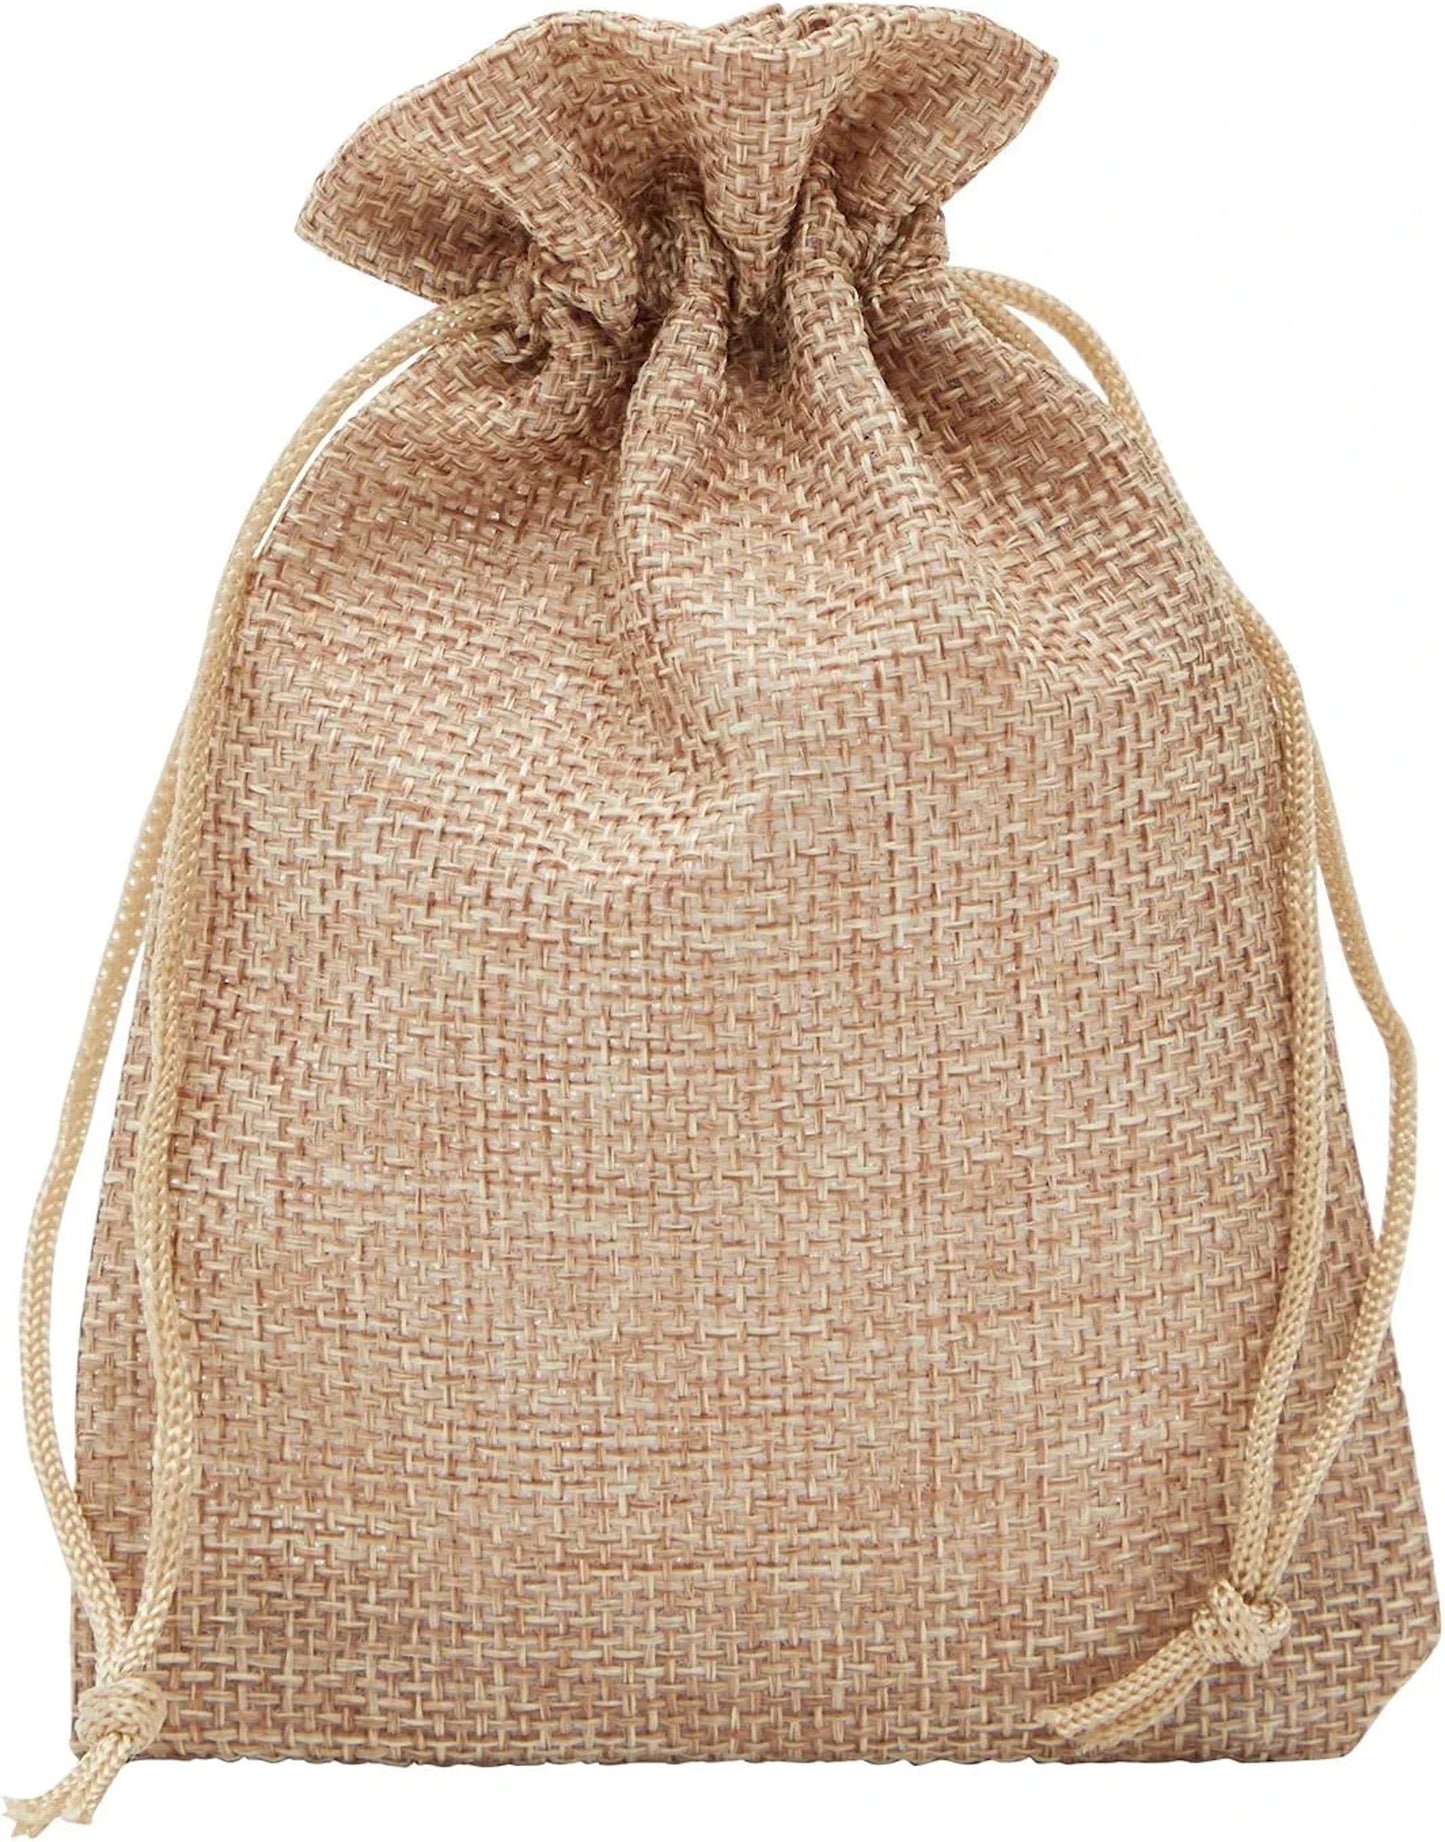 Bags | Burlap Sacks | Drawstring Bag